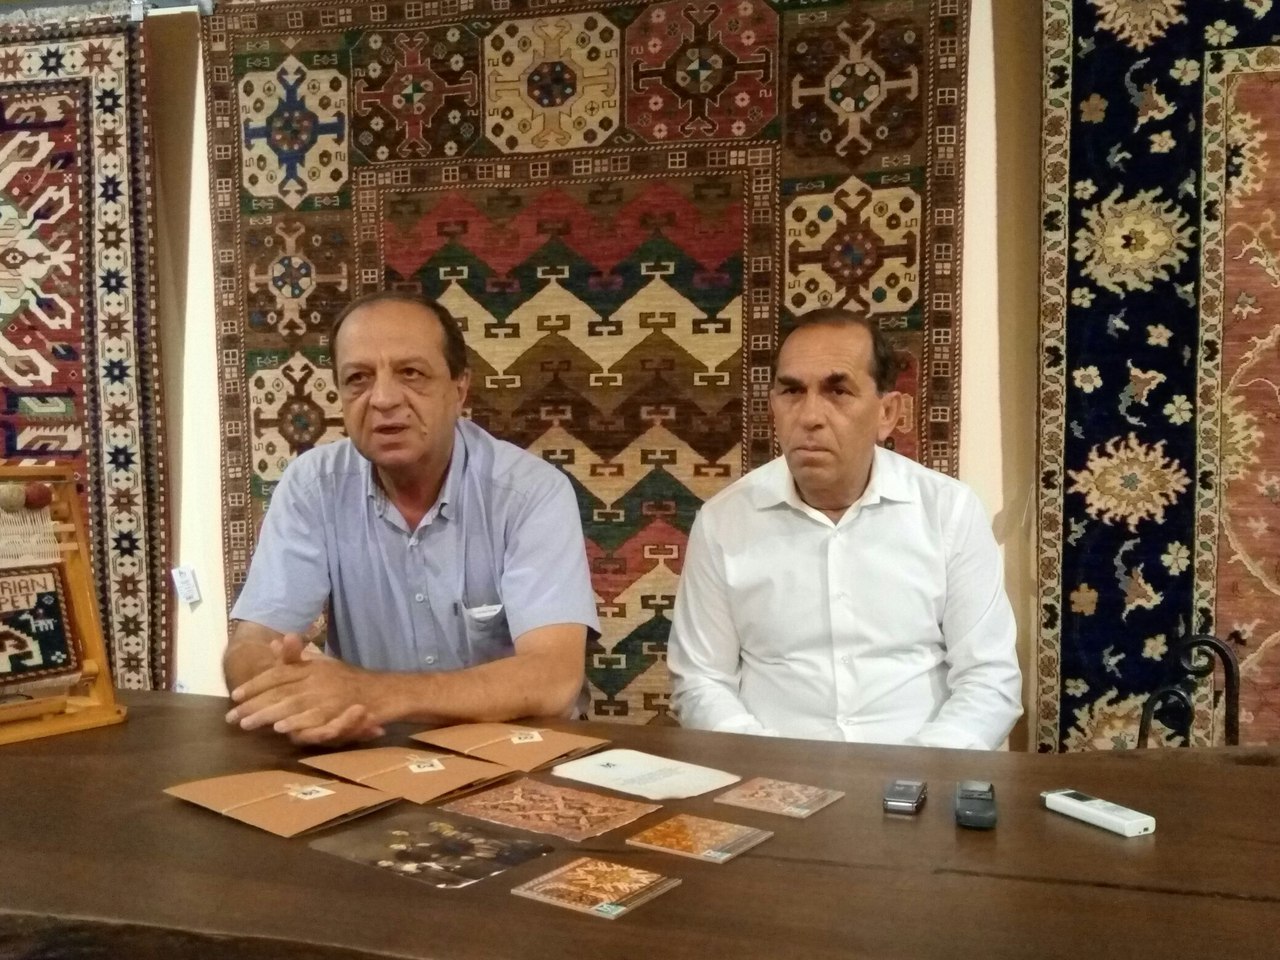 Megeryan Carpet намерен возродить работу ранее действующих по всей Армении ковроткацких фабрик